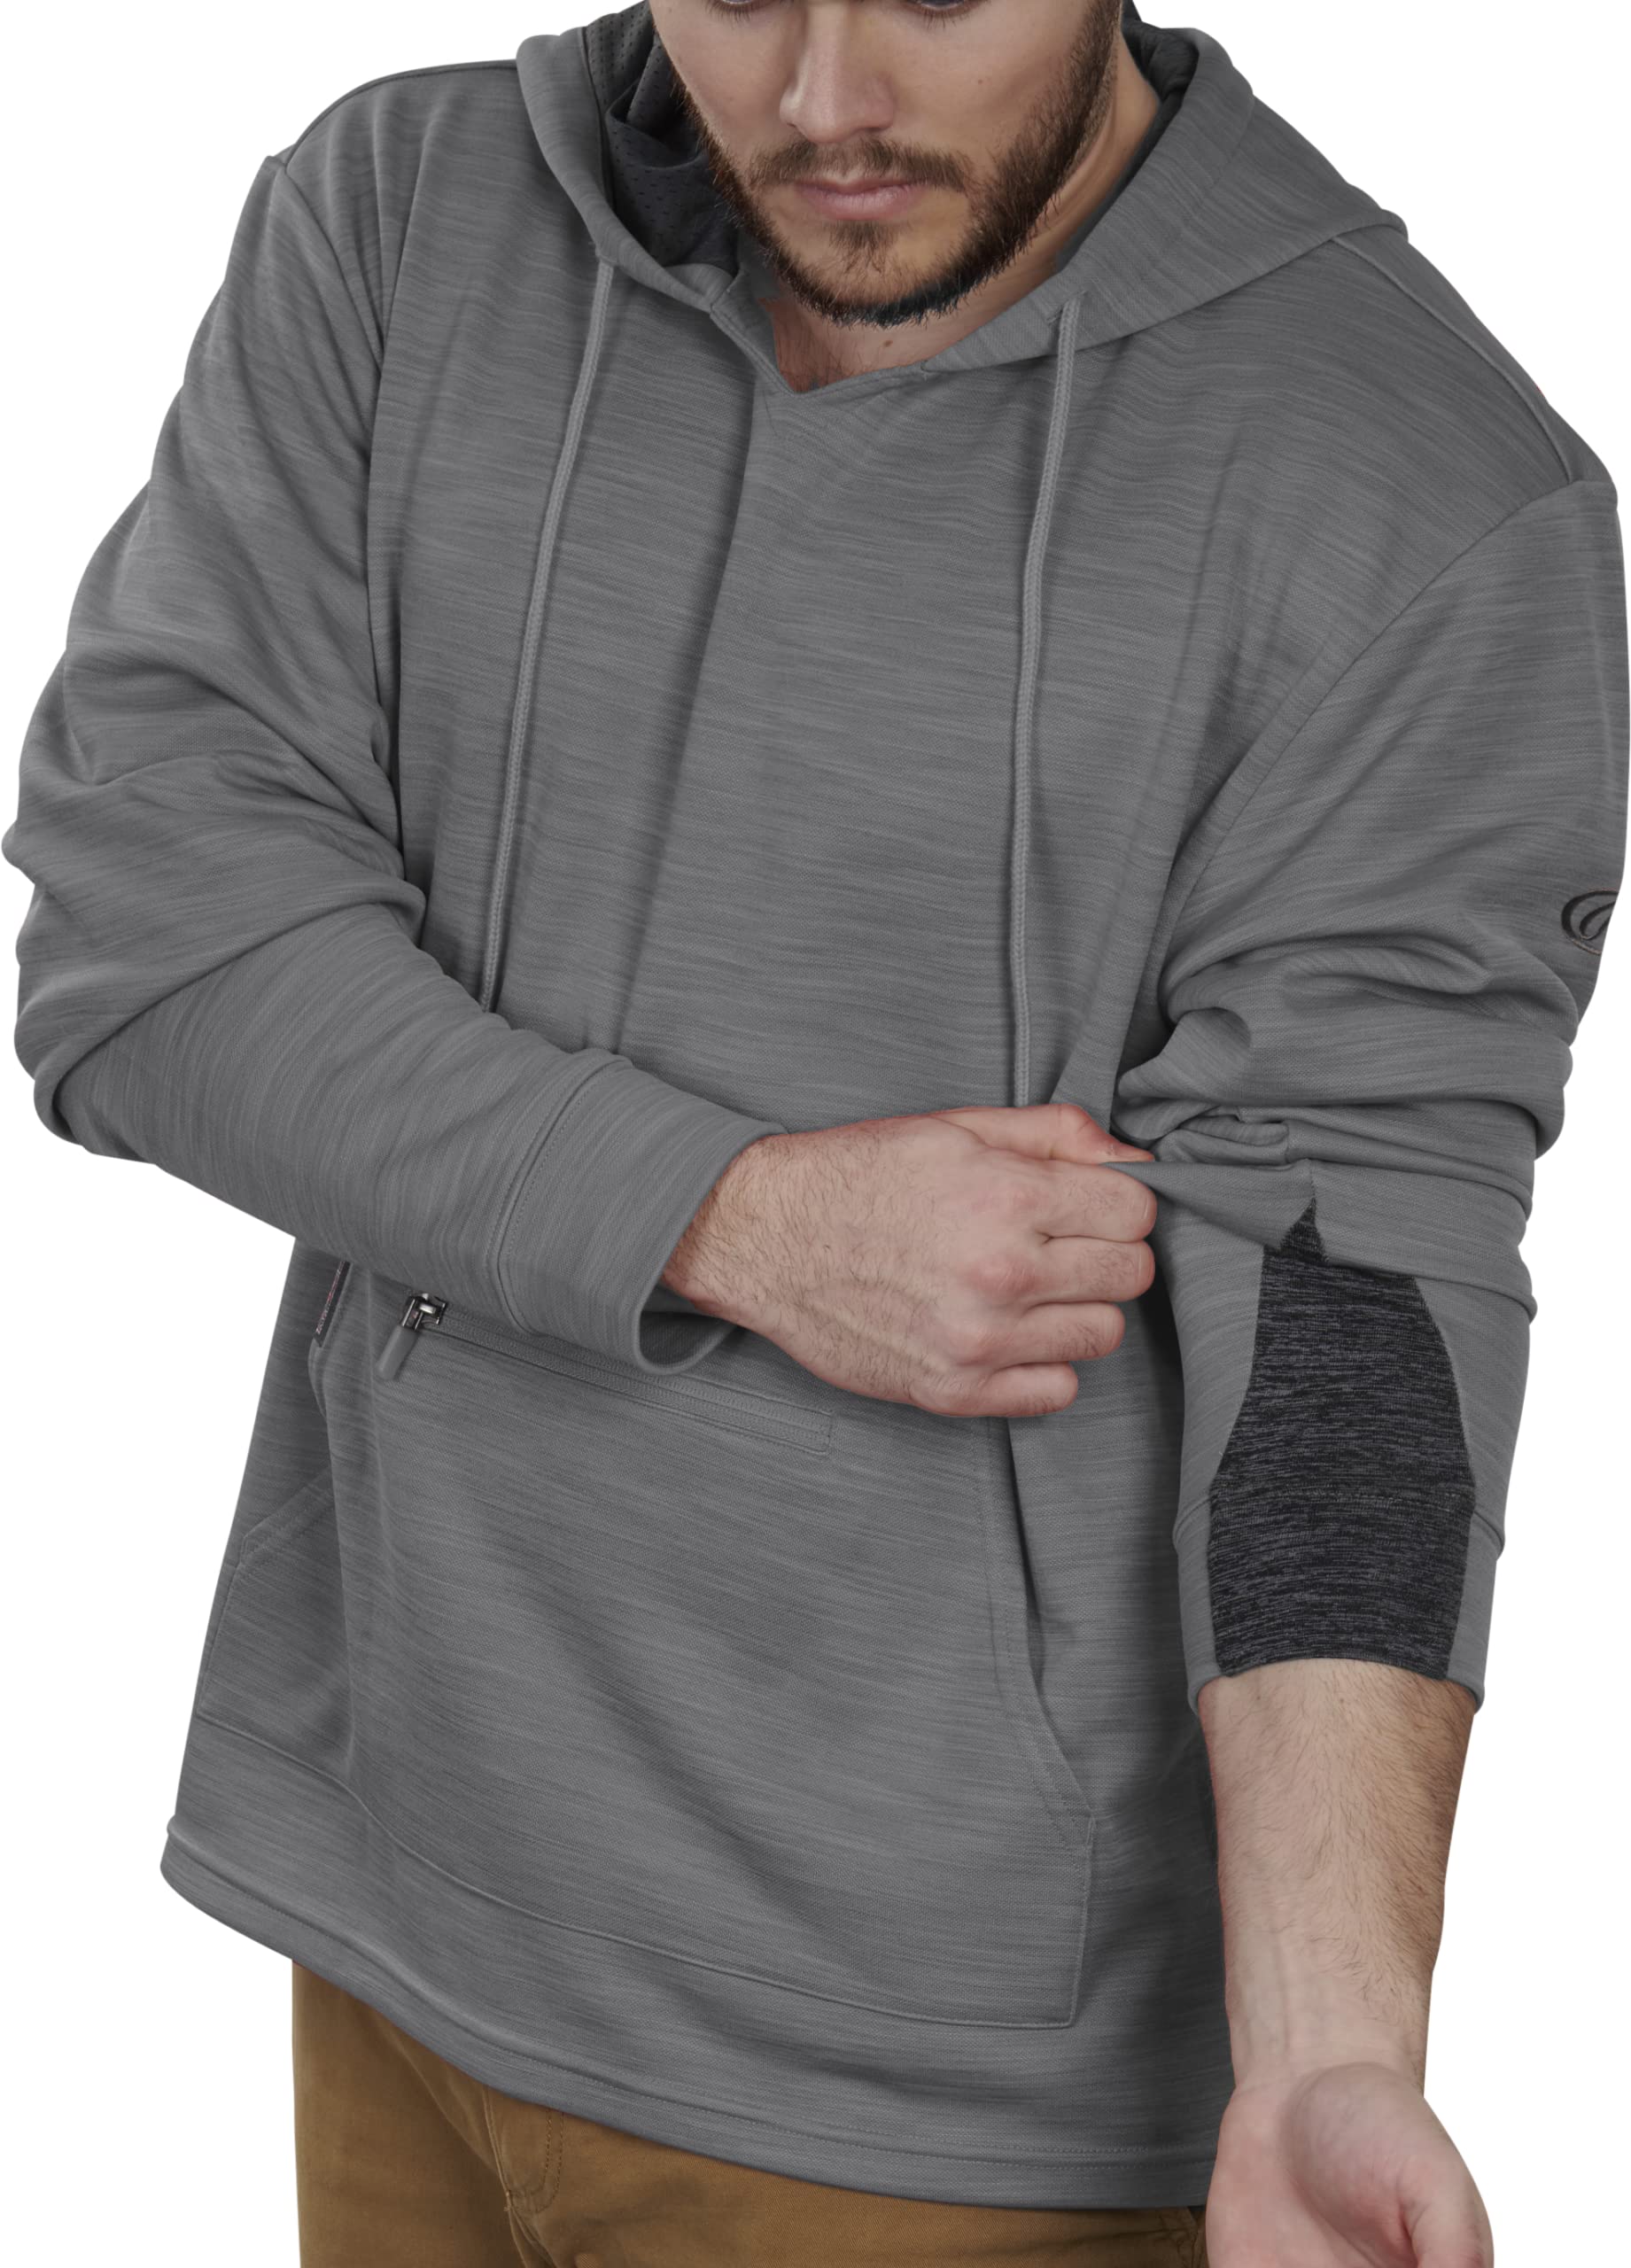 Rawlings Adult Brushed Performance Fleece Hoodie Series, Grey, Small